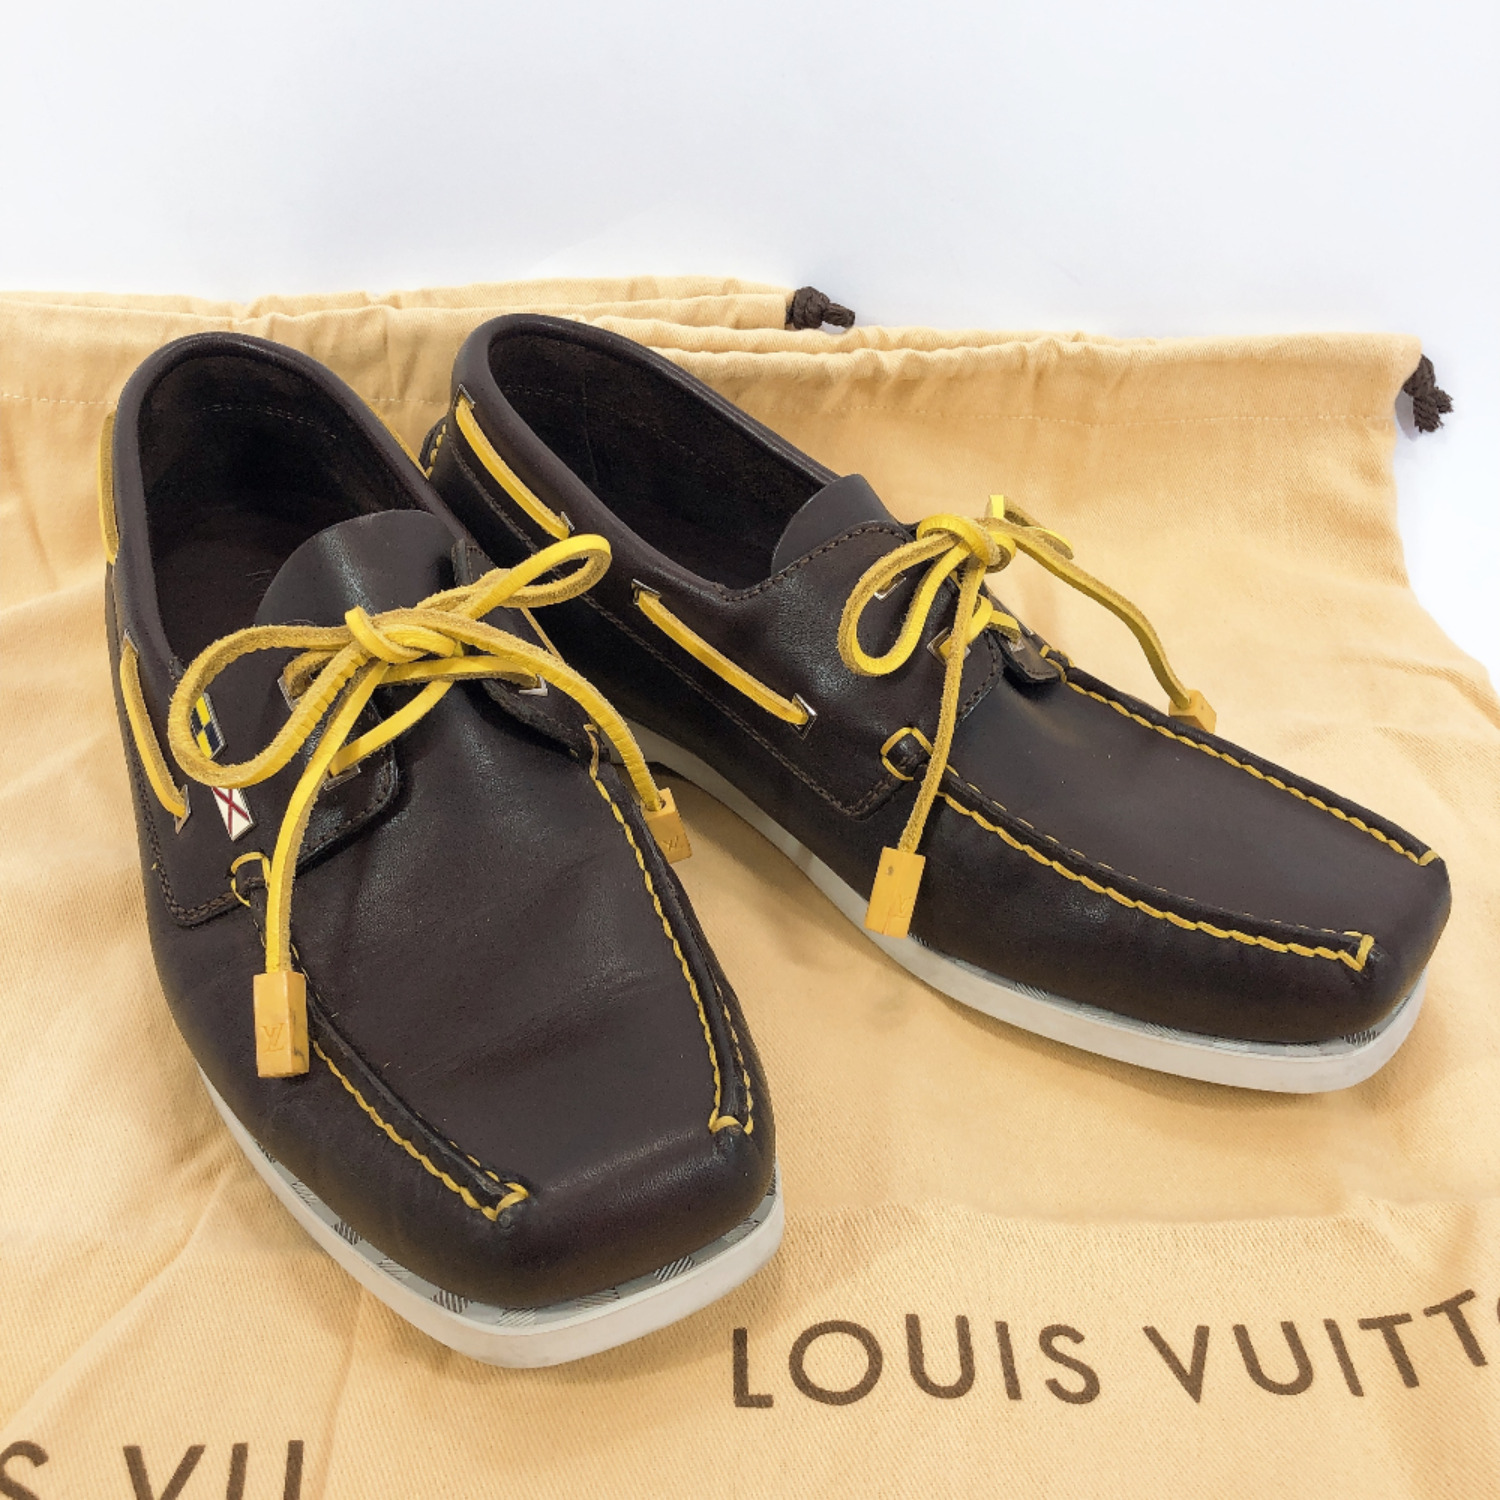 LOUIS VUITTON Deck shoes Louis Vuitton cup leather yellow mens 6 1/2 size | eBay